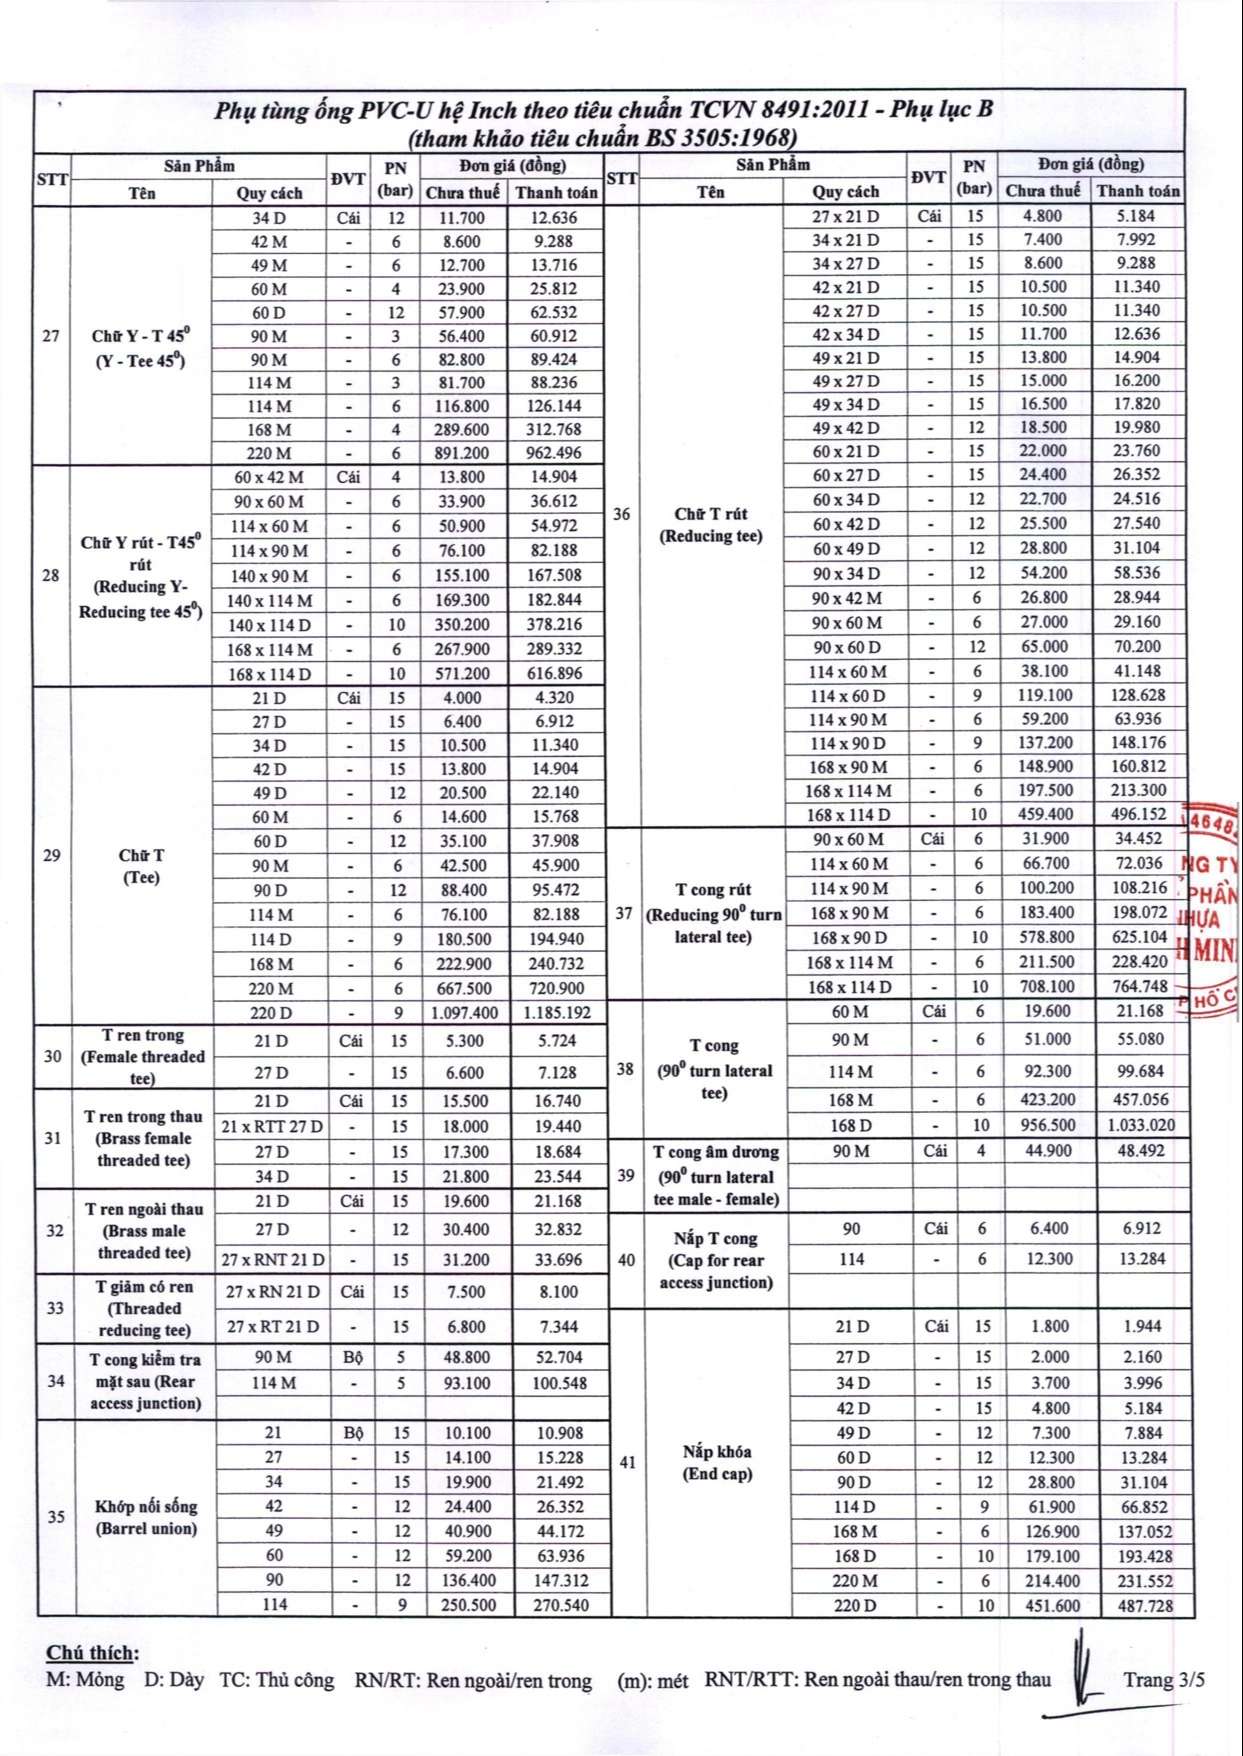 Chi tiết đơn giá ống nhựa Bình Minh theo từng loại sản phẩm